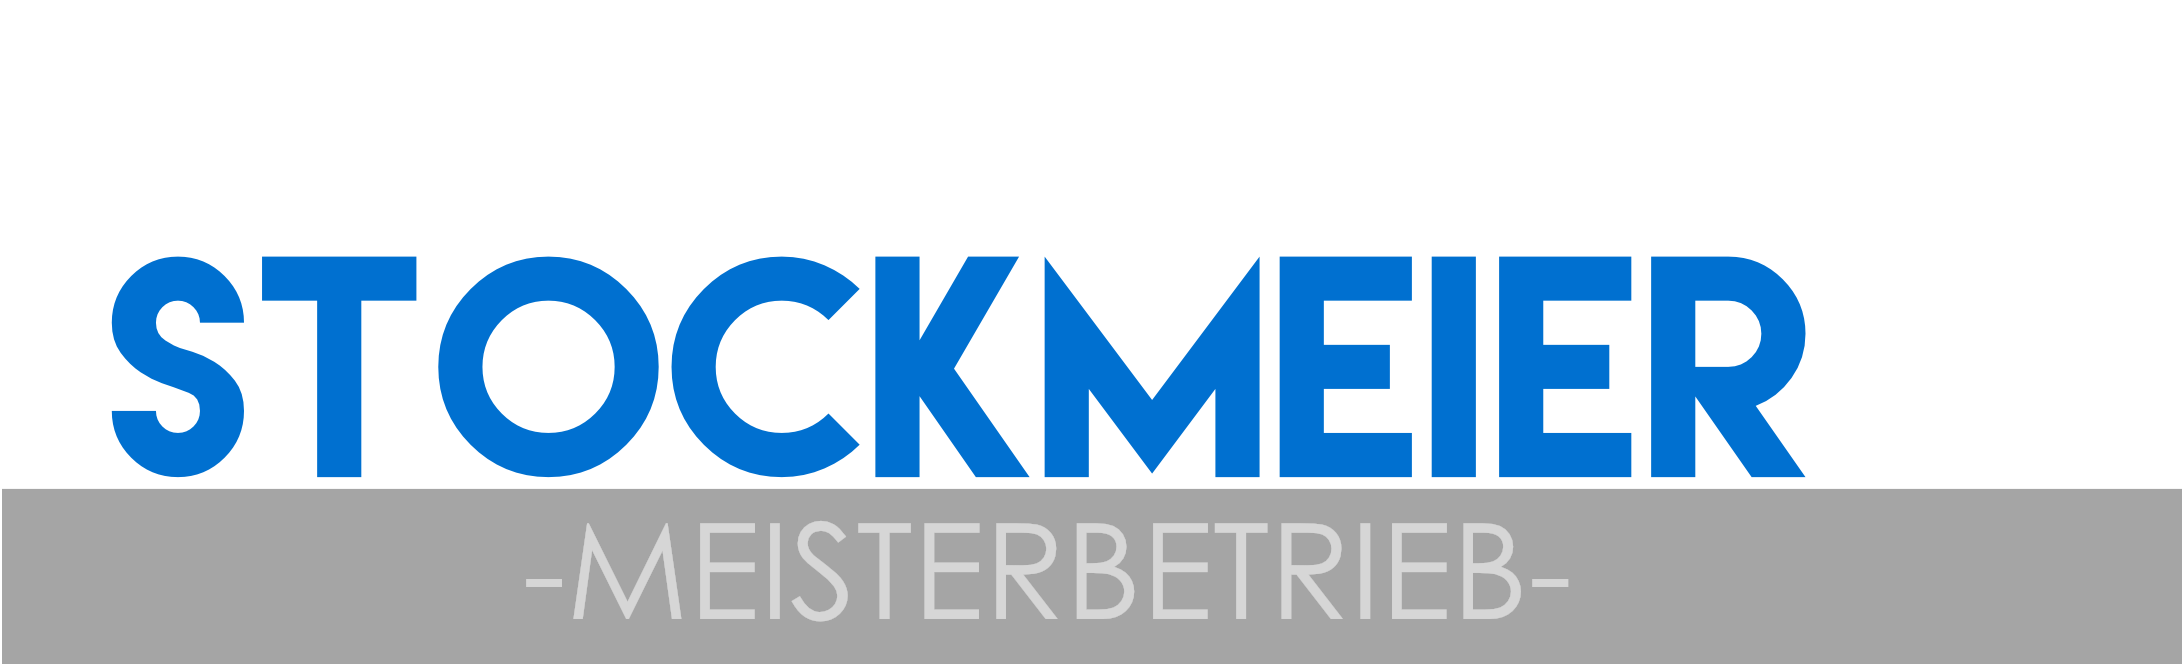 motoren-stockmeier_logo_02